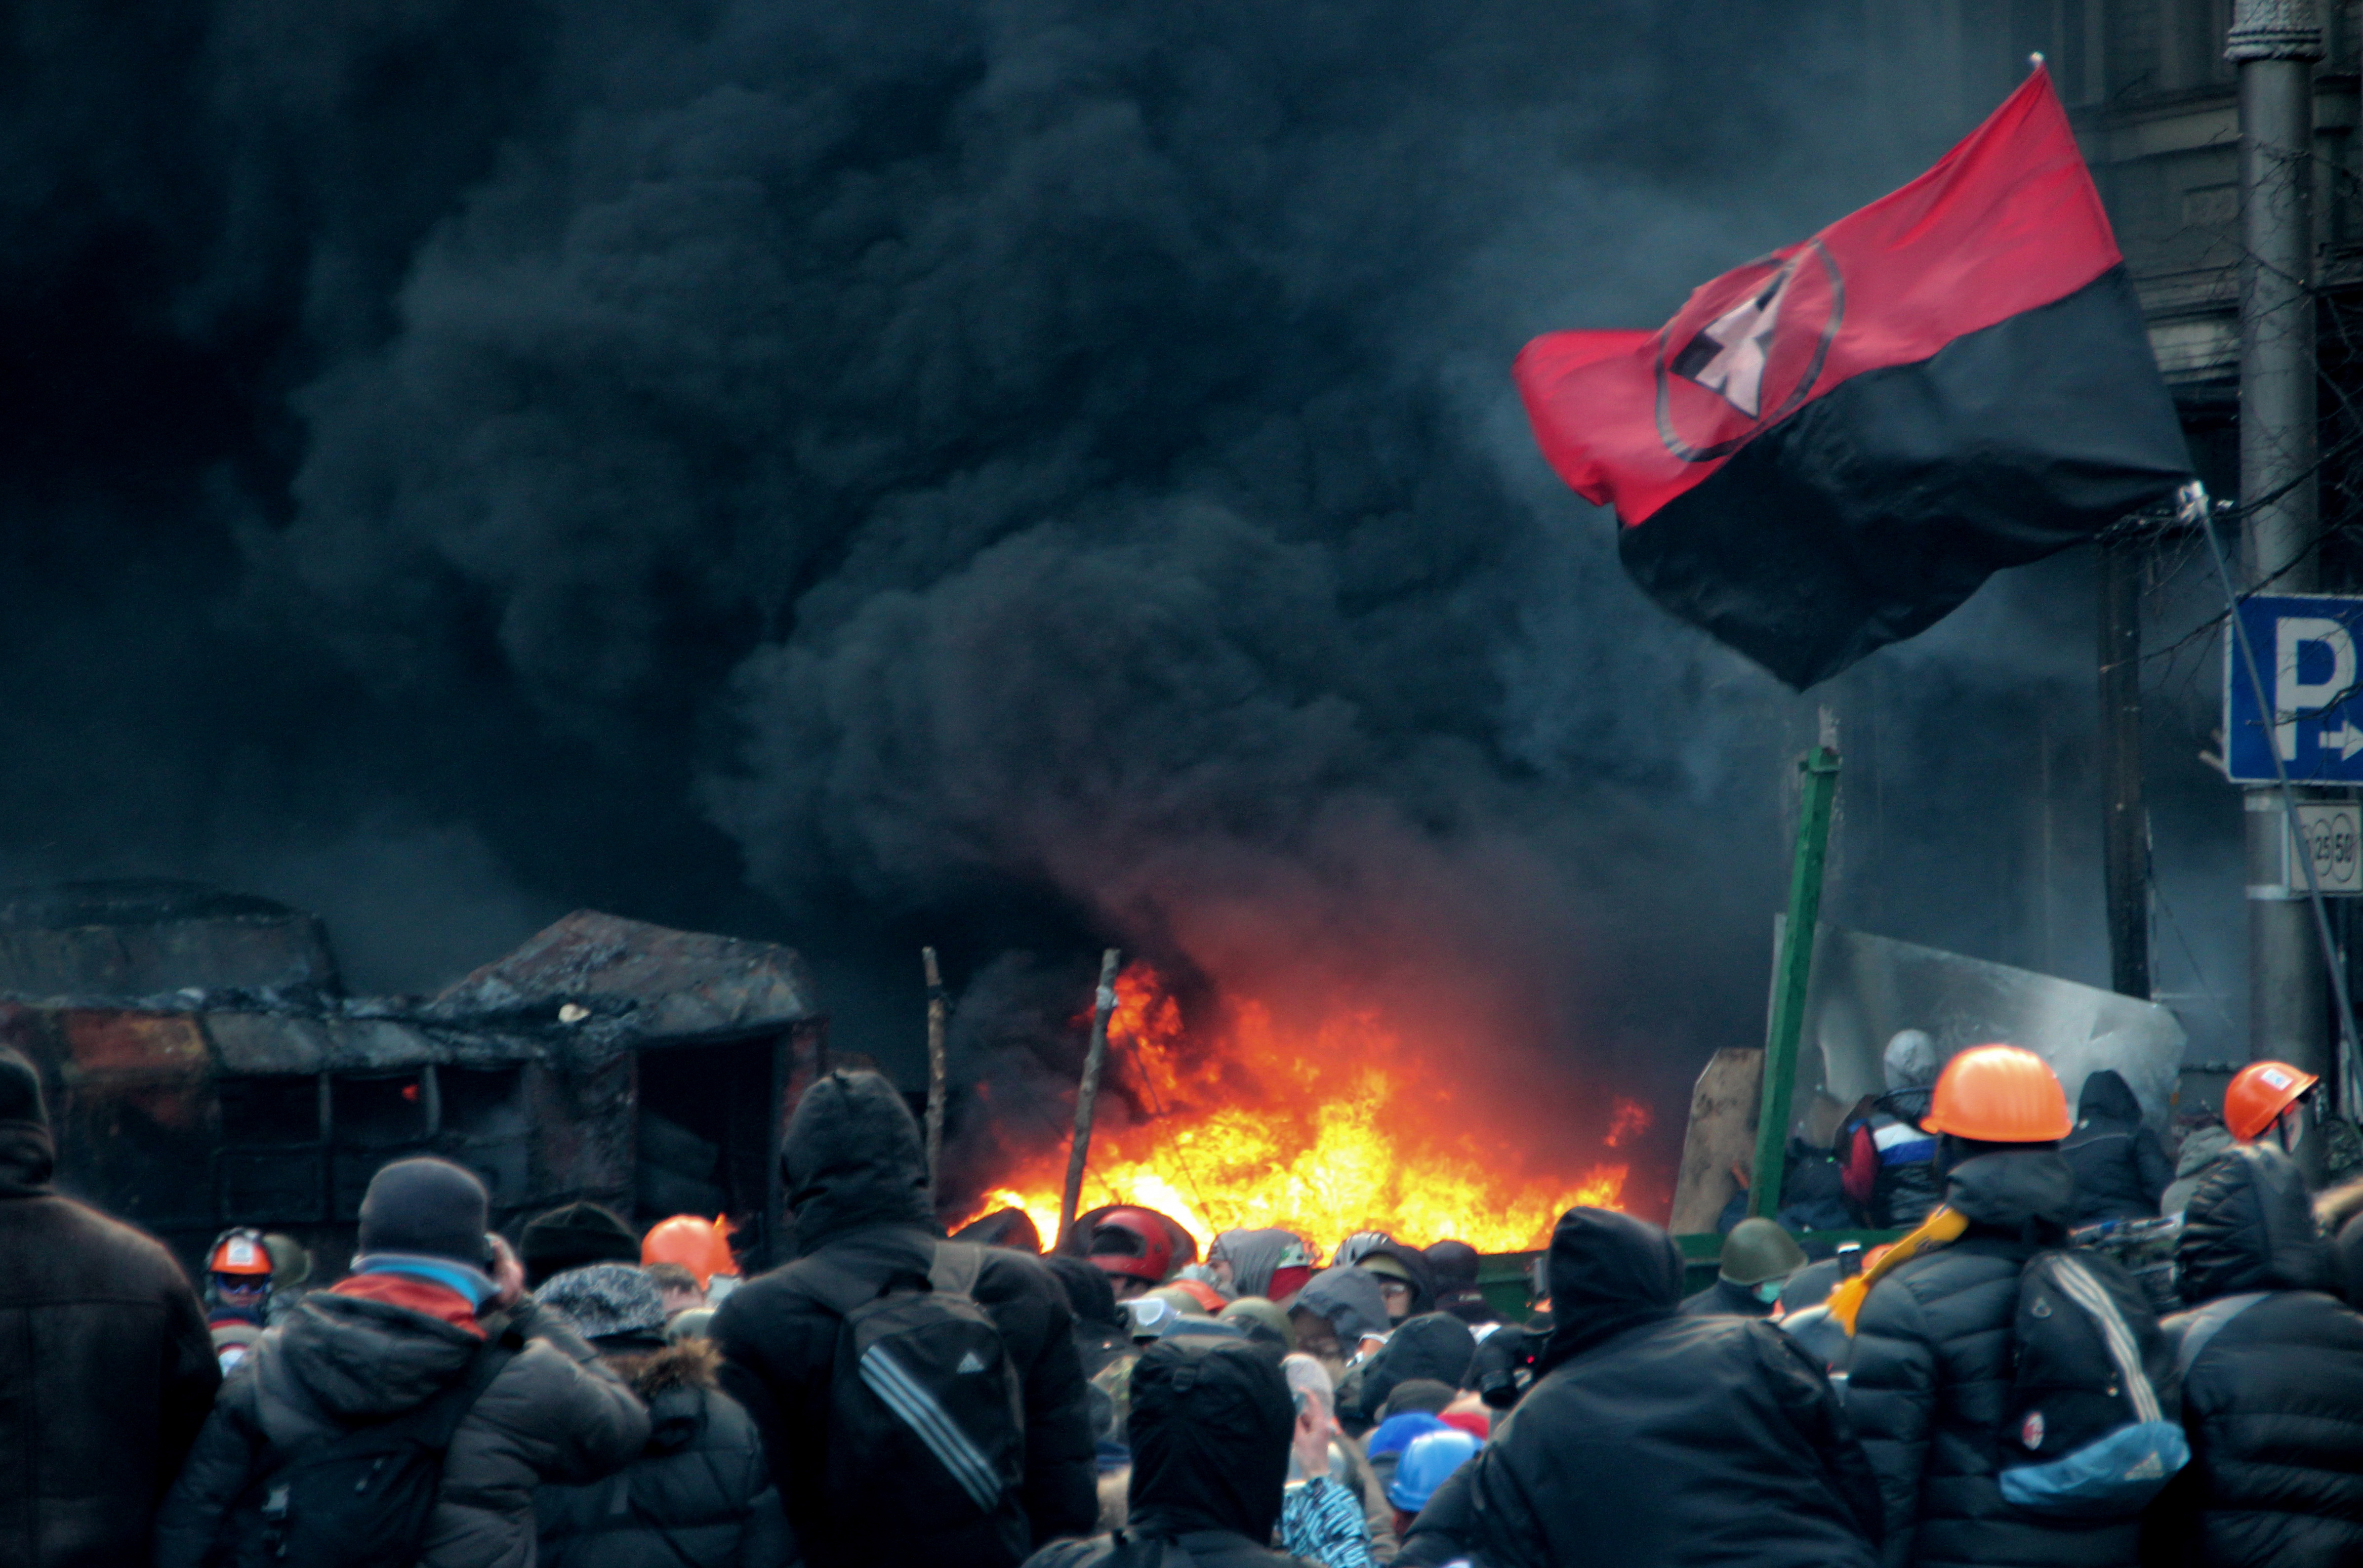 Украина, Киев. Улица Грушевского. Противостояние оппозиционеров со спецназом. Дым от горящих покрышек.